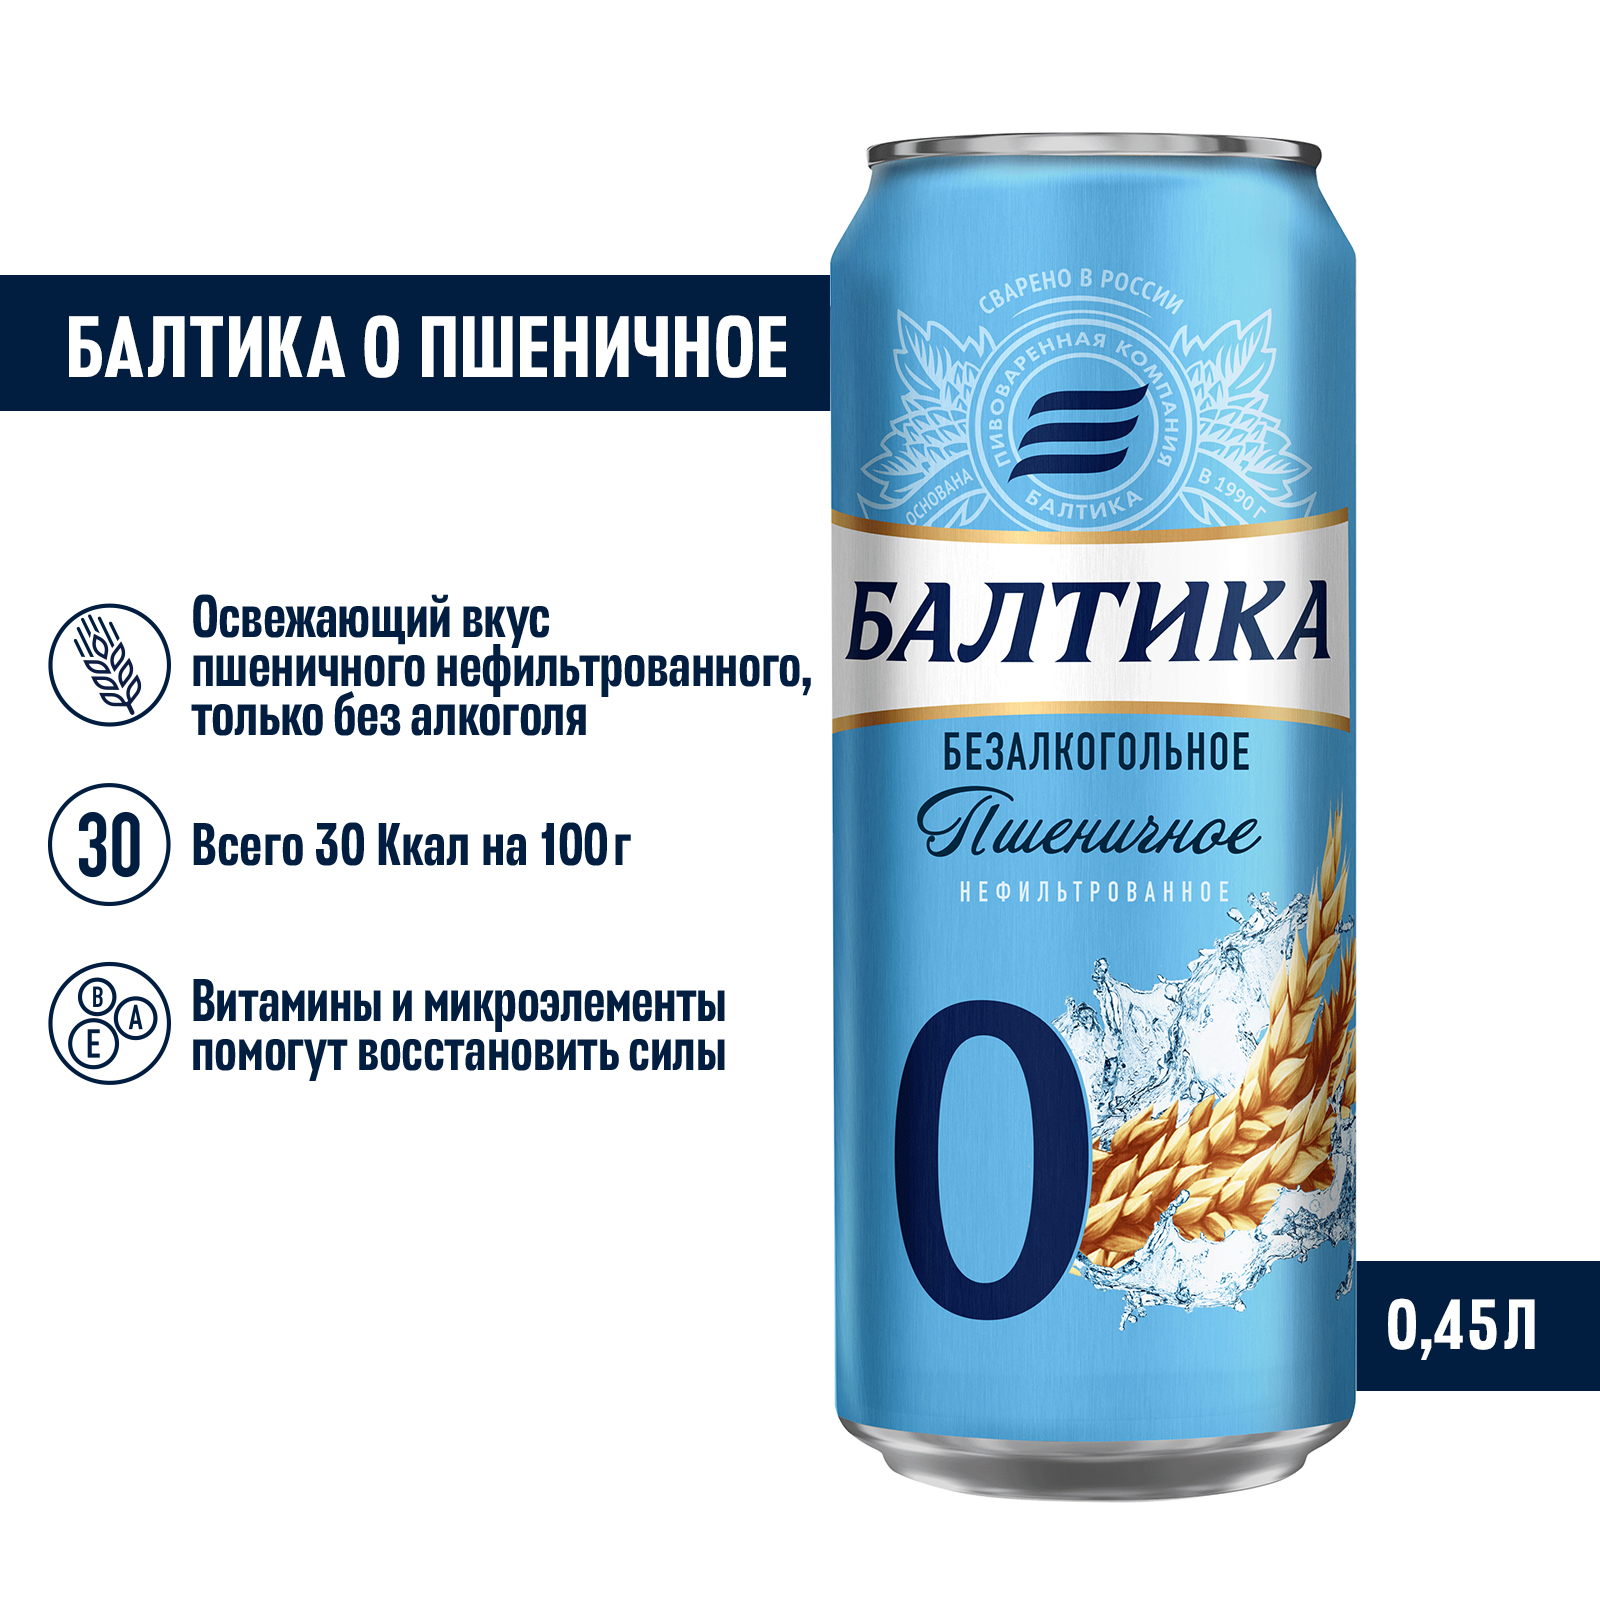 Пивной напиток Балтика №0 Пшеничное нефильтрованное безалкогольное 0,45 л, банка